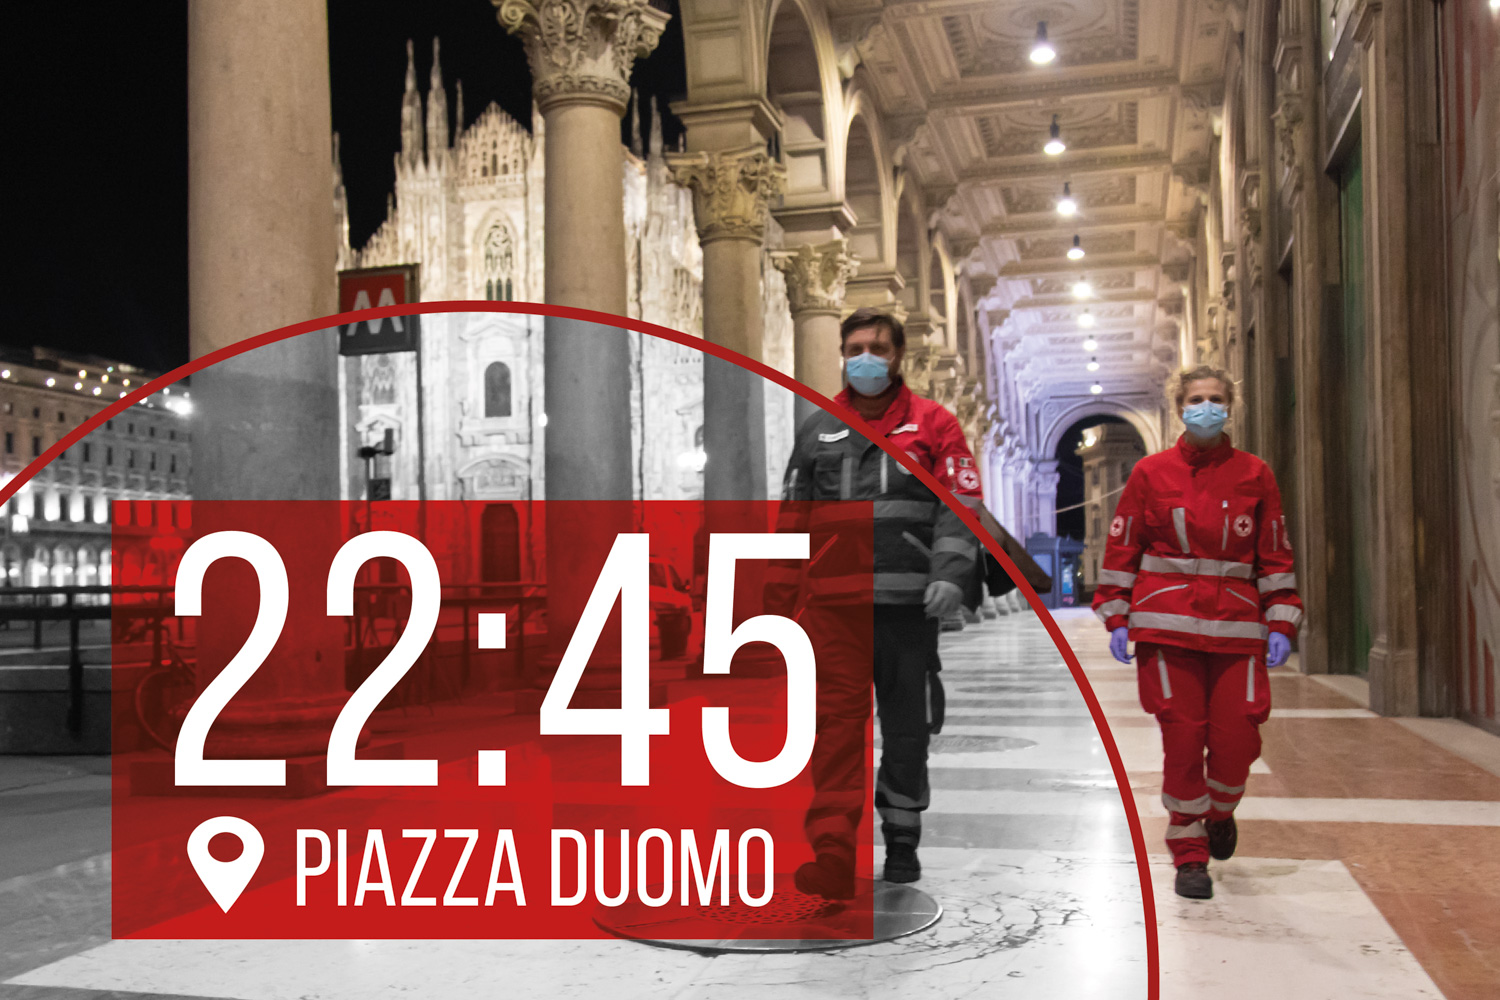 22:45, piazza Duomo